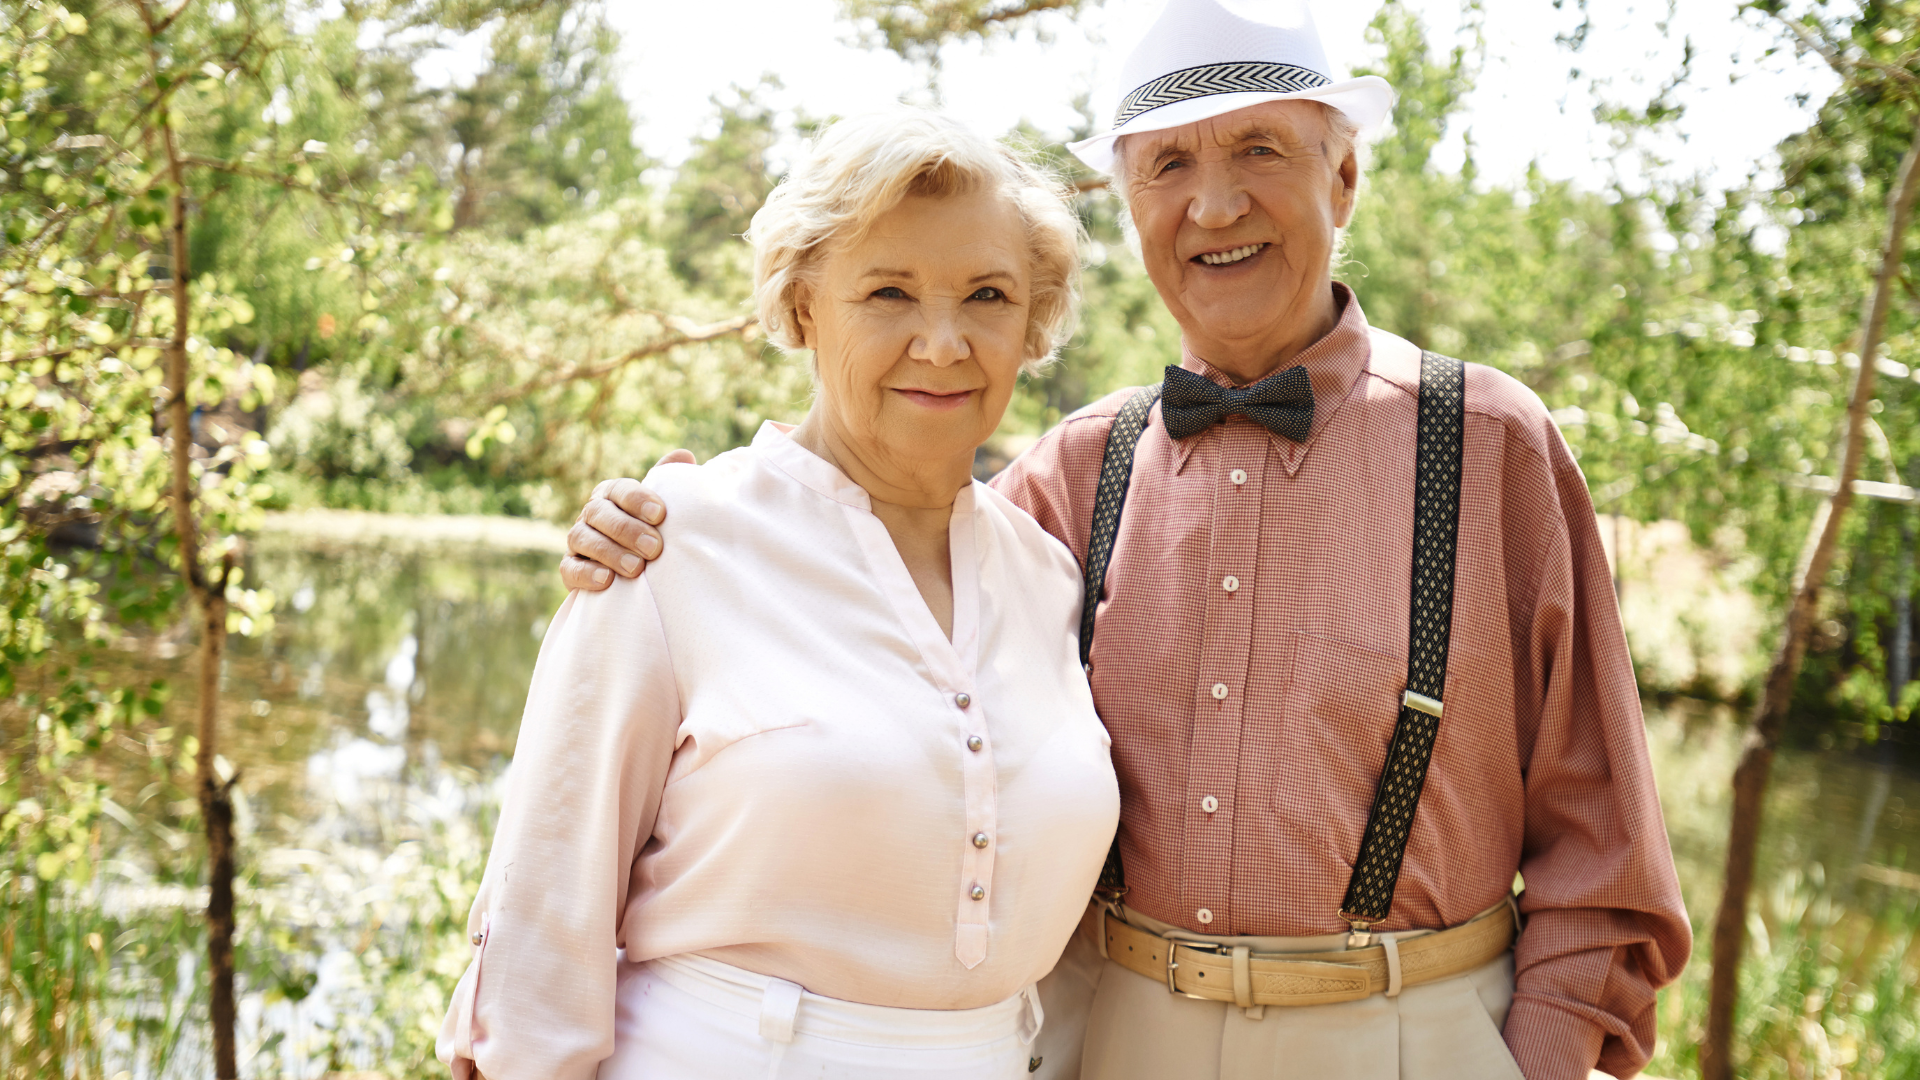 Sinnvolle Beschäftigungen in der Pension: 5 Tipps für einen erfüllten Alltag im Ruhestand